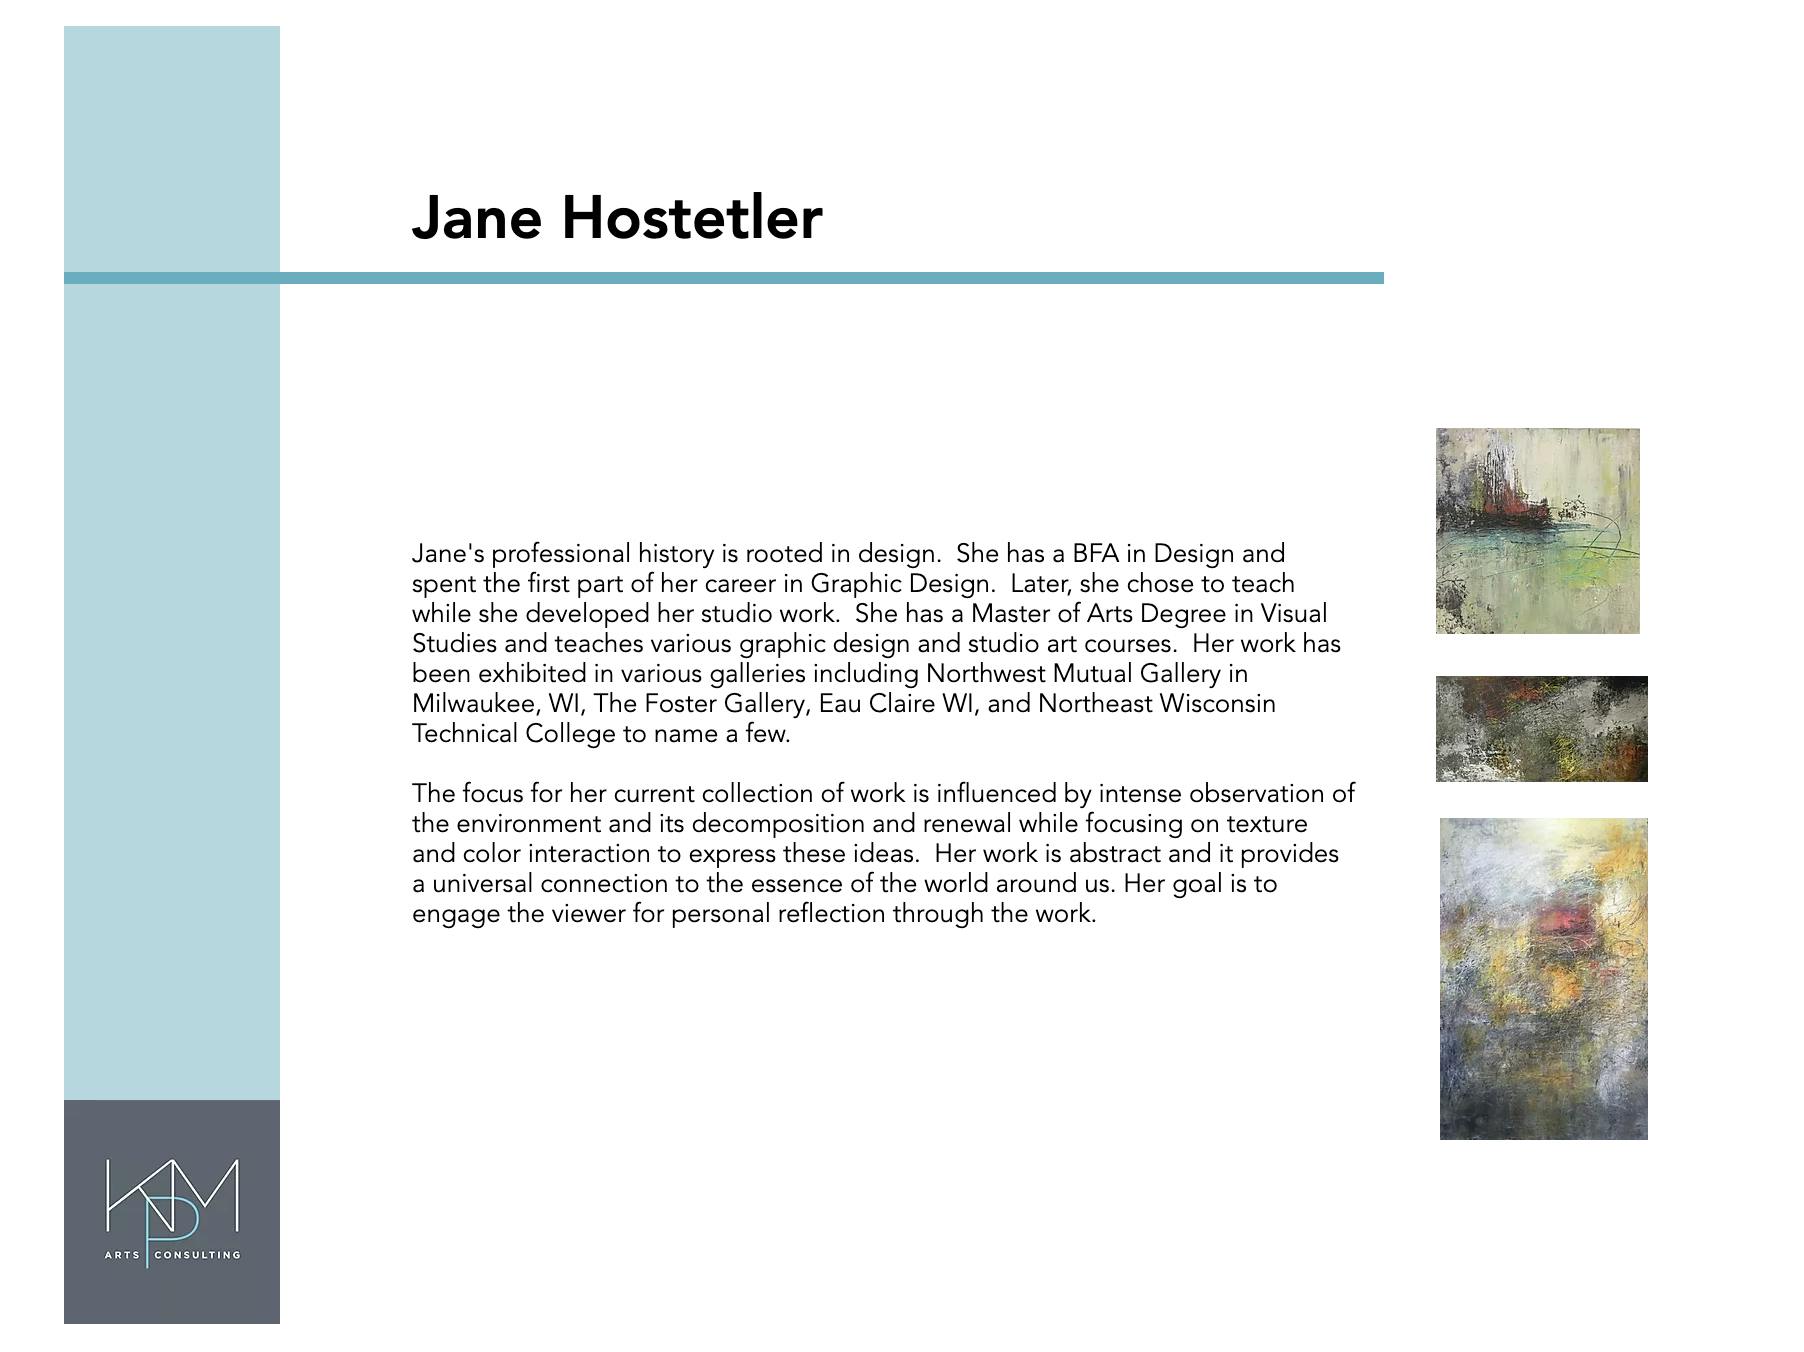 Jane Hostetler